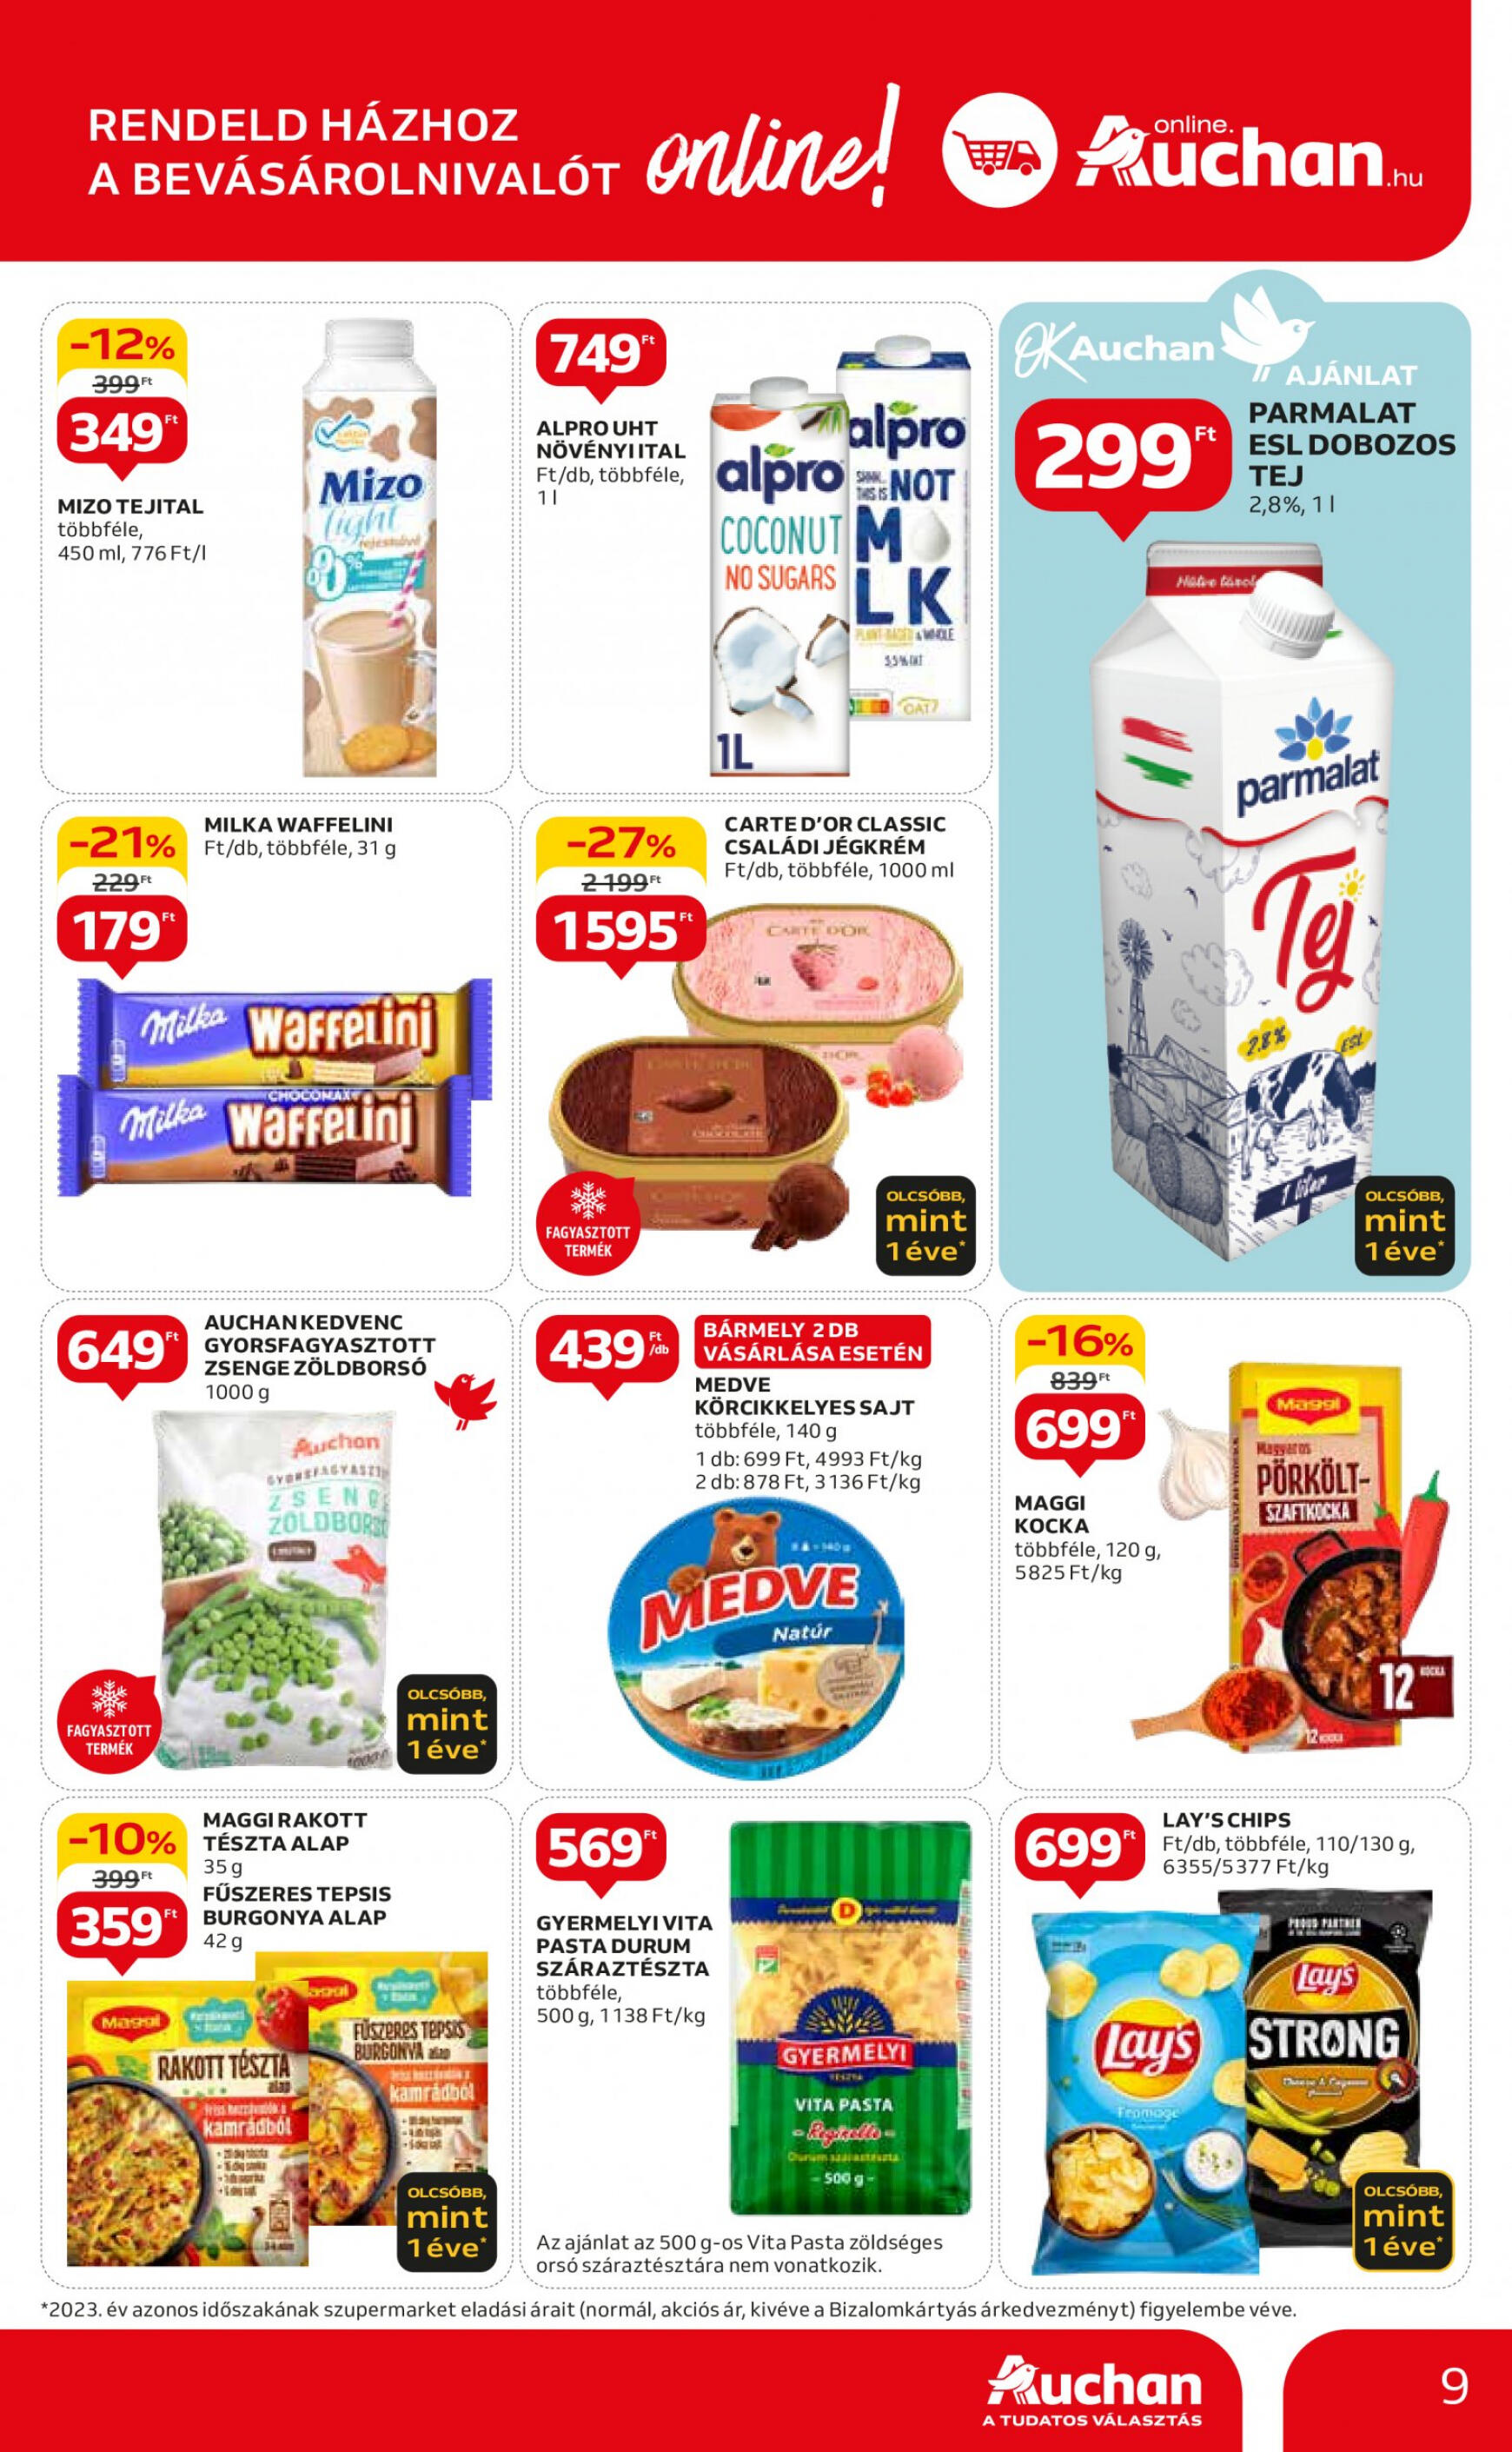 auchan - Aktuális újság Auchan szupermarket 05.09. - 05.15. - page: 9